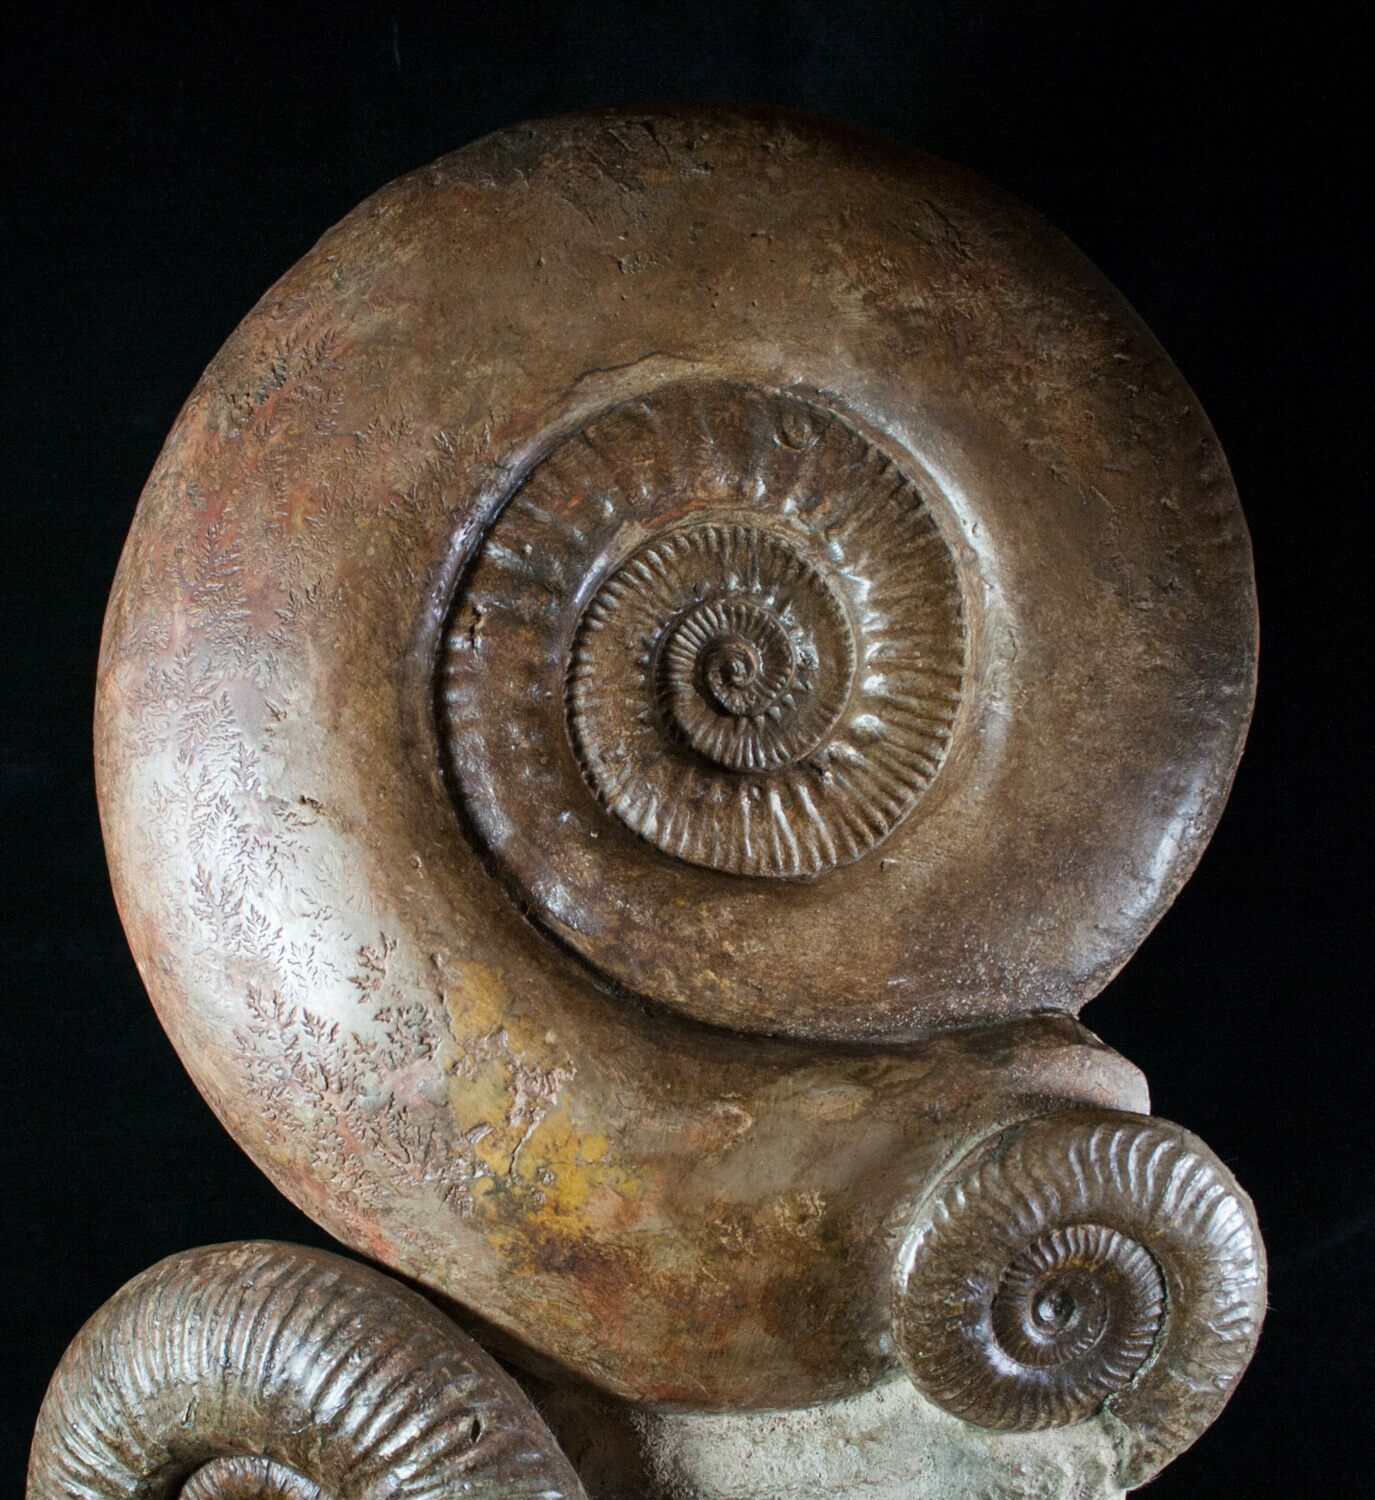 giant ammonite